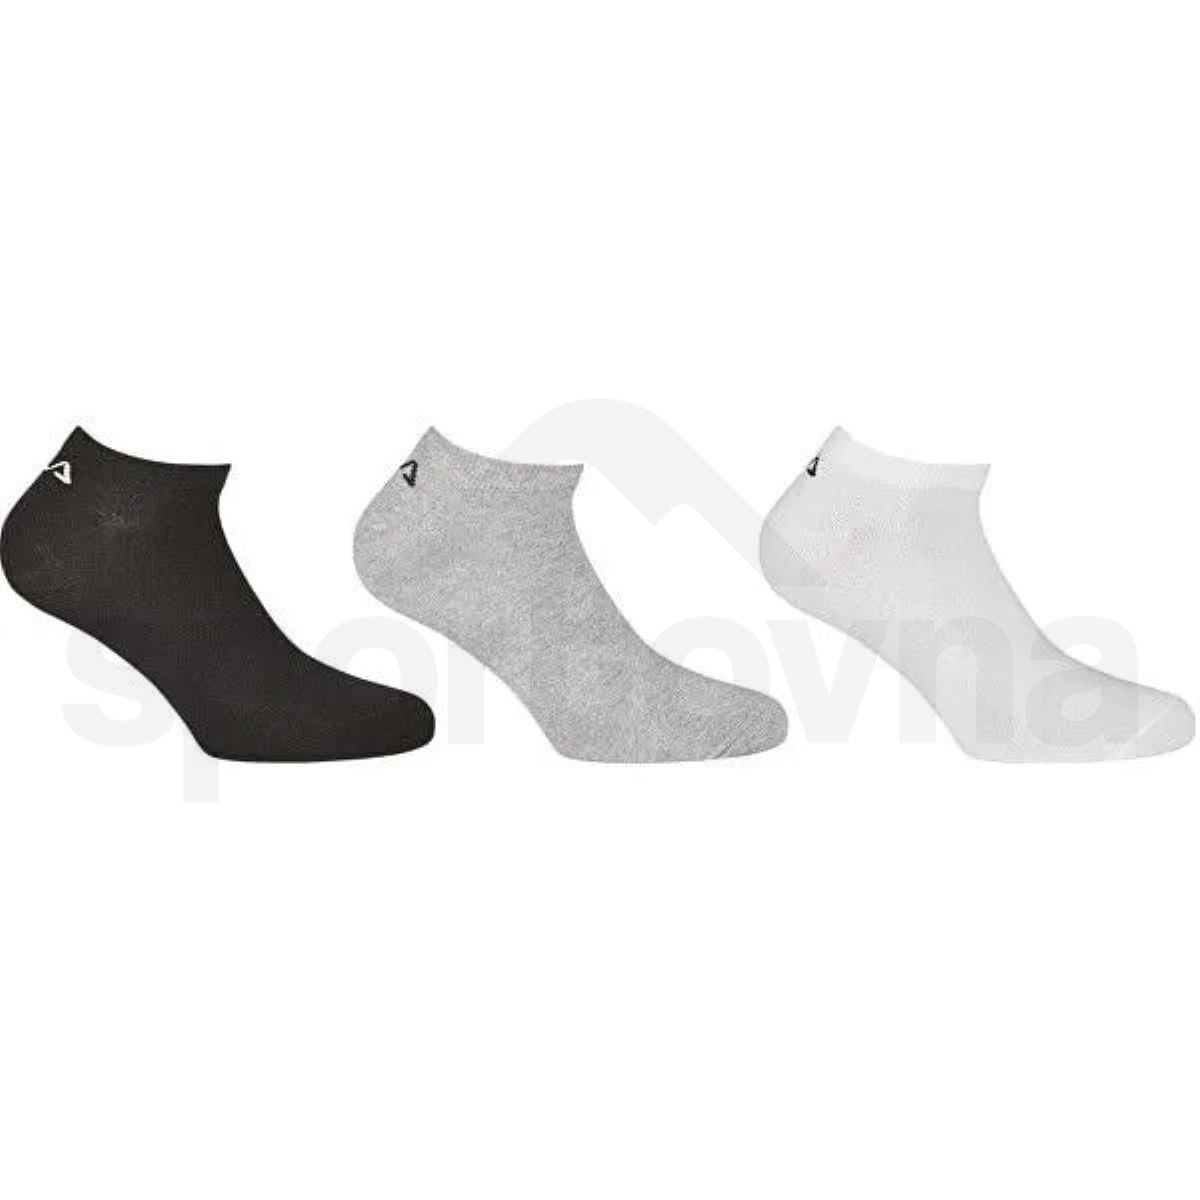 Ponožky Fila Invisible Plain 3 Pack - černá/šedá/bílá